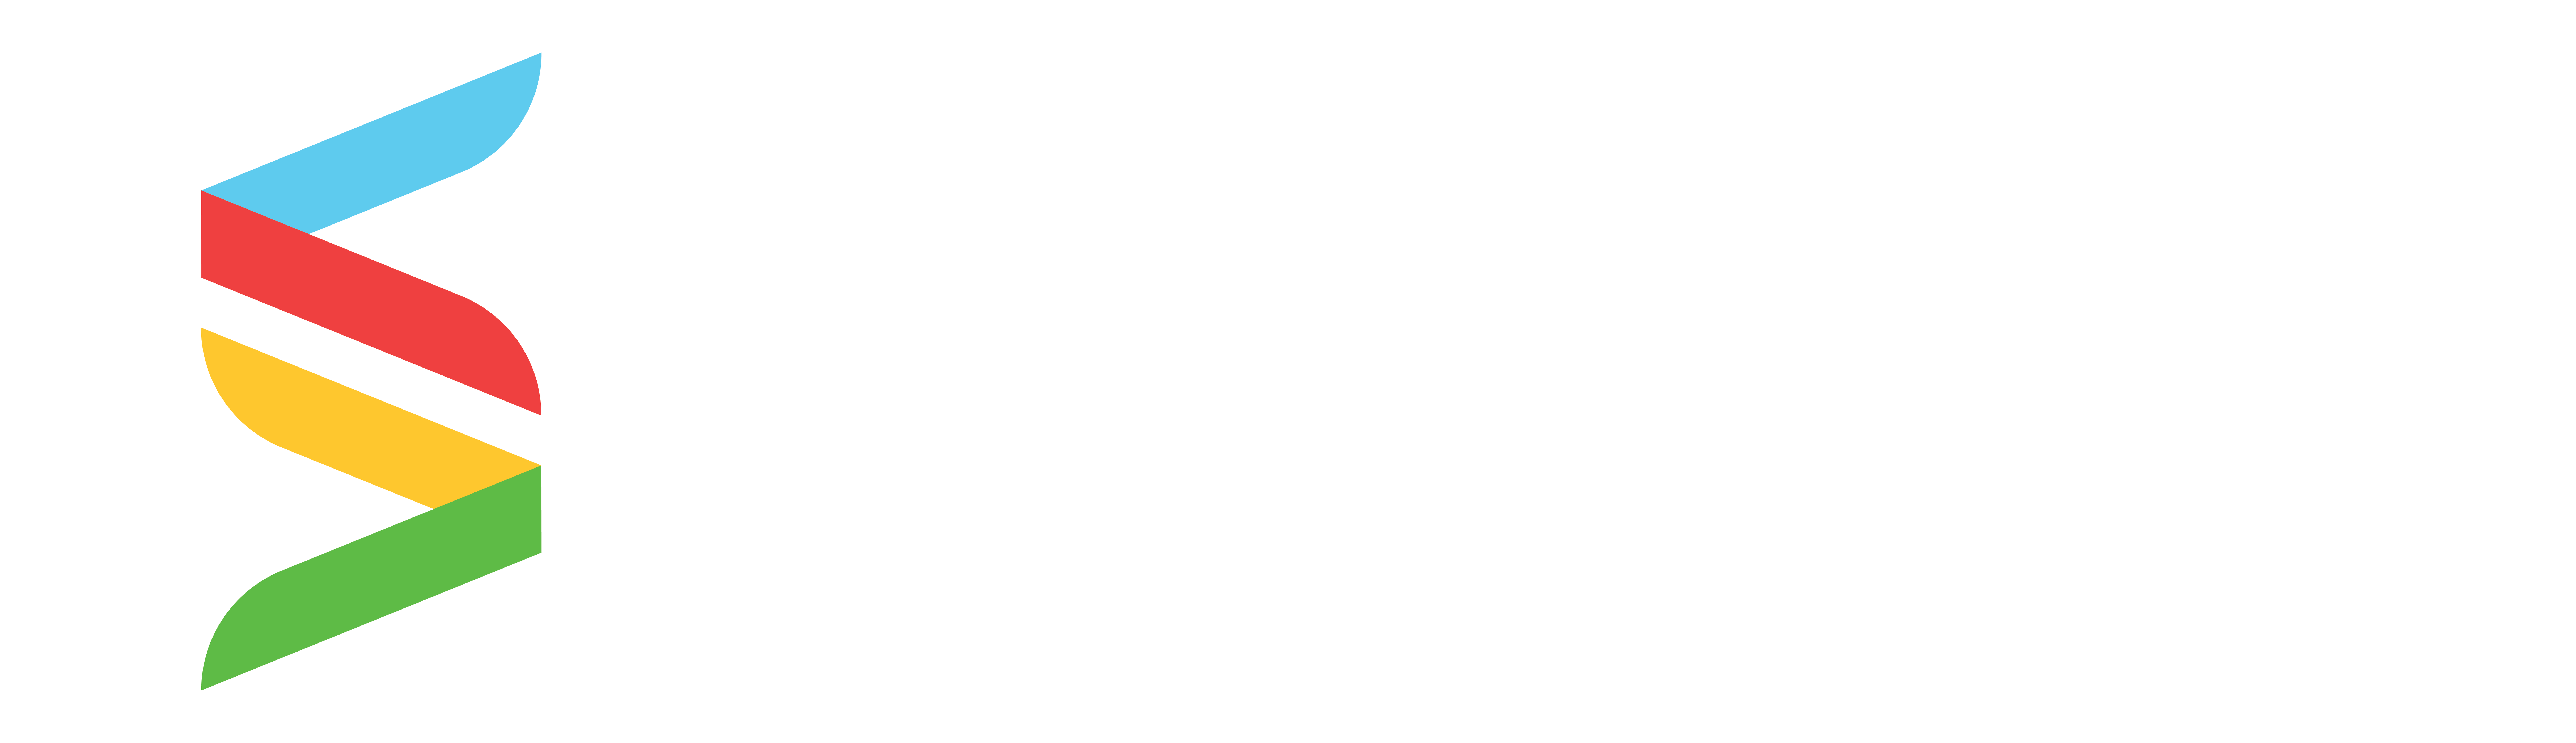 Servsoft